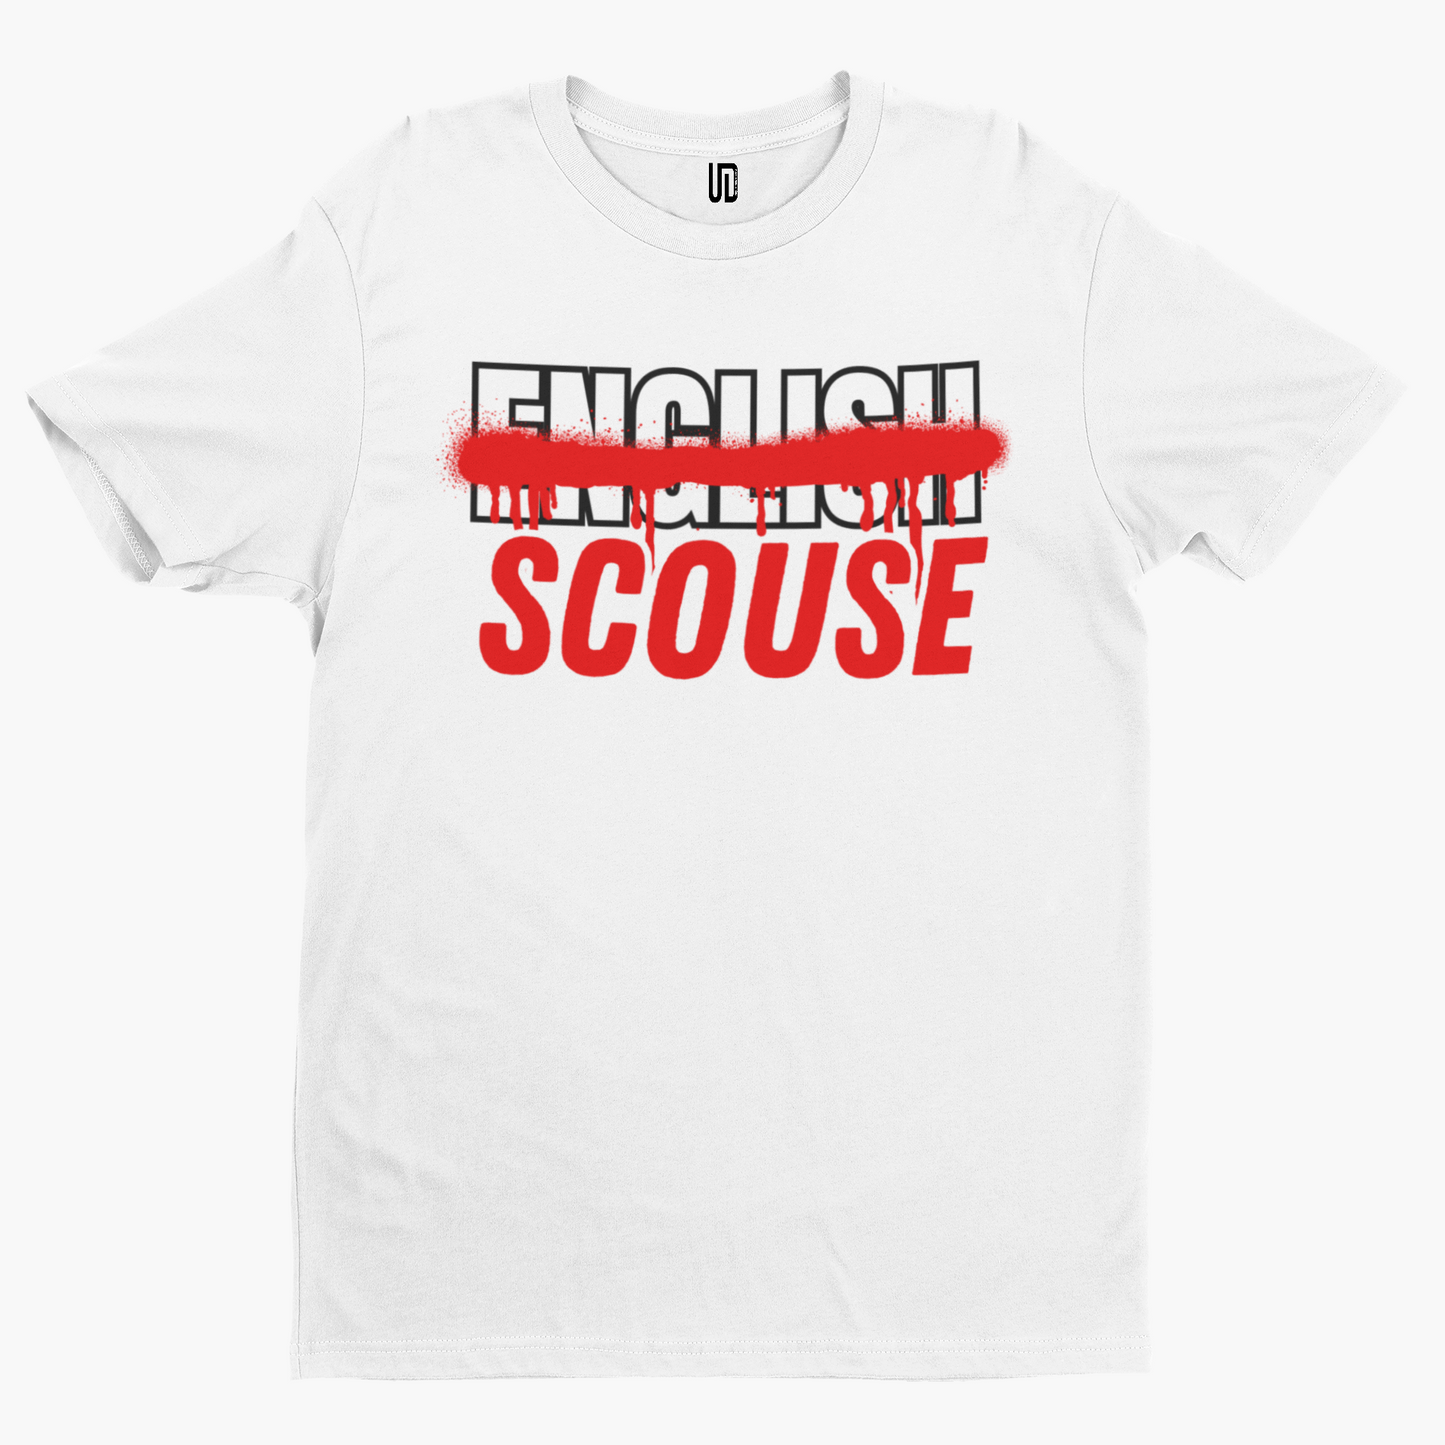 Scouse Not English T-Shirt - Unique Designs UK Scouse Meme Collection Liverpool